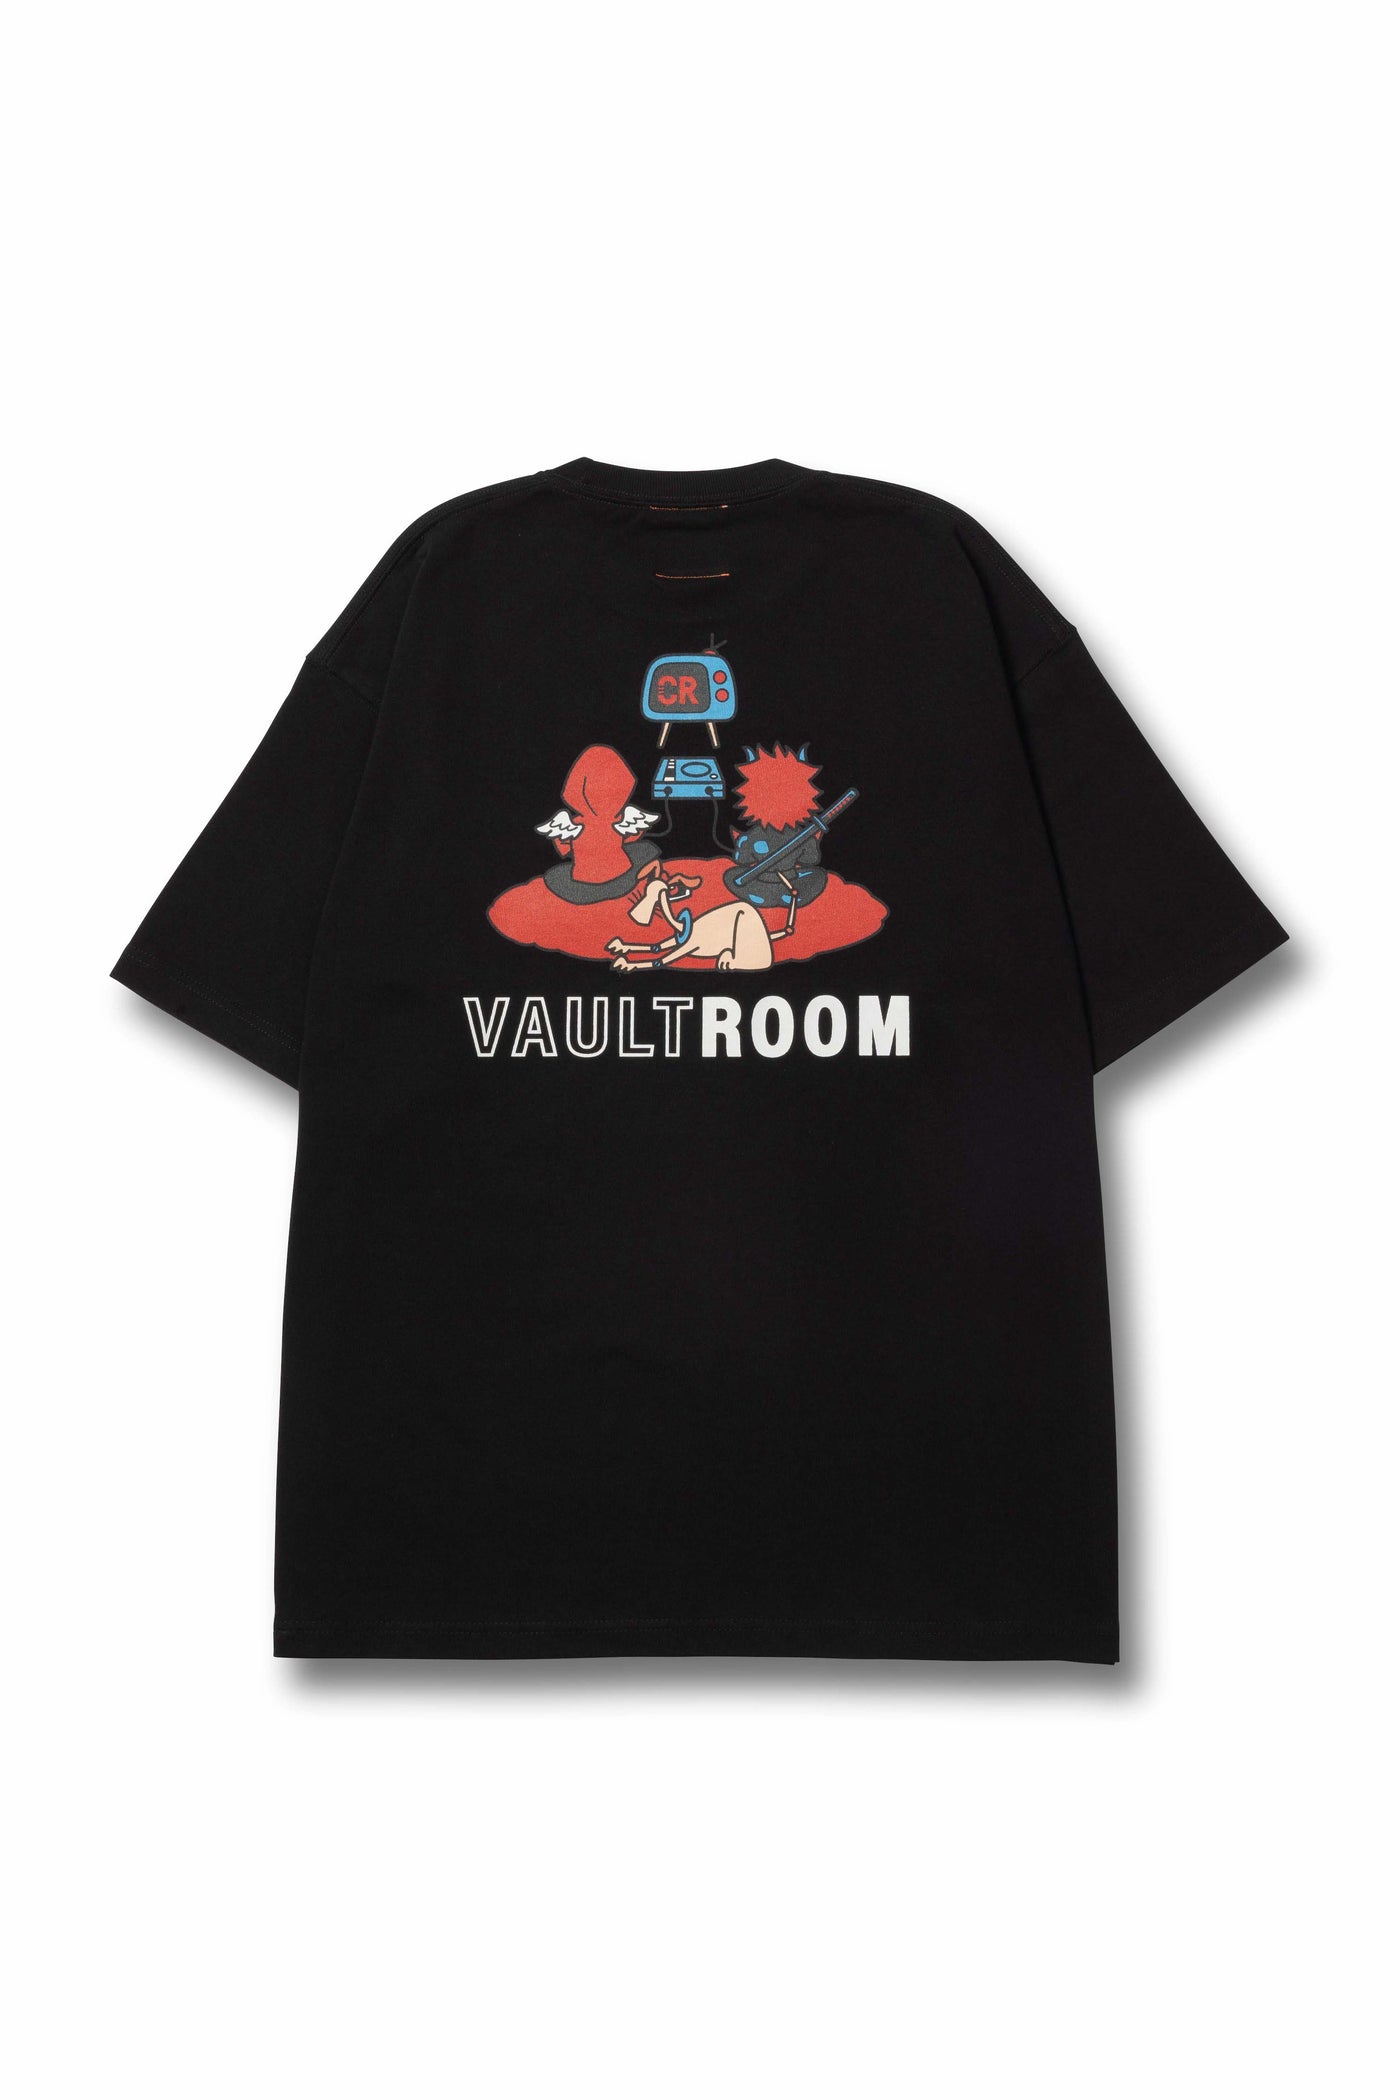 破格値下げ】 vaultroom × Selly Hoodie / BLK Lサイズ - トップス